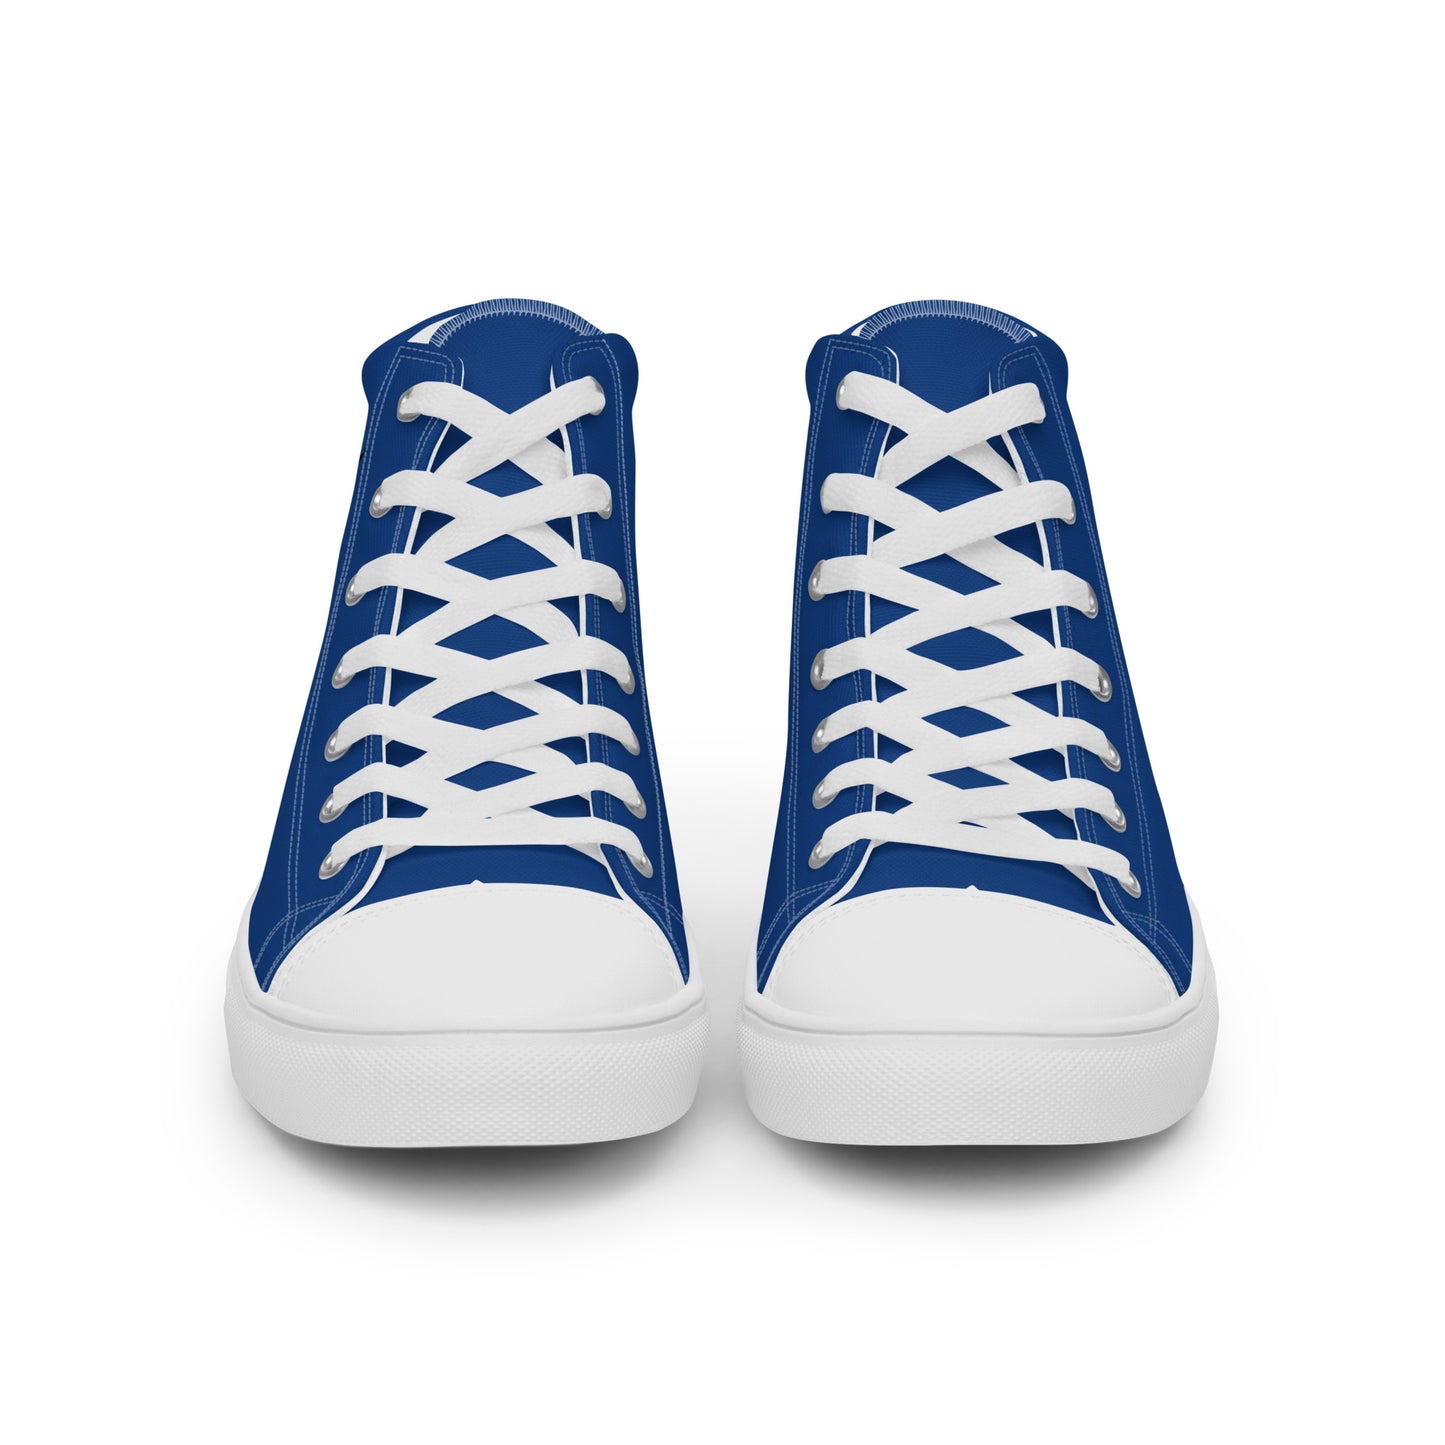 Cuba - Men - Blue - High top shoes